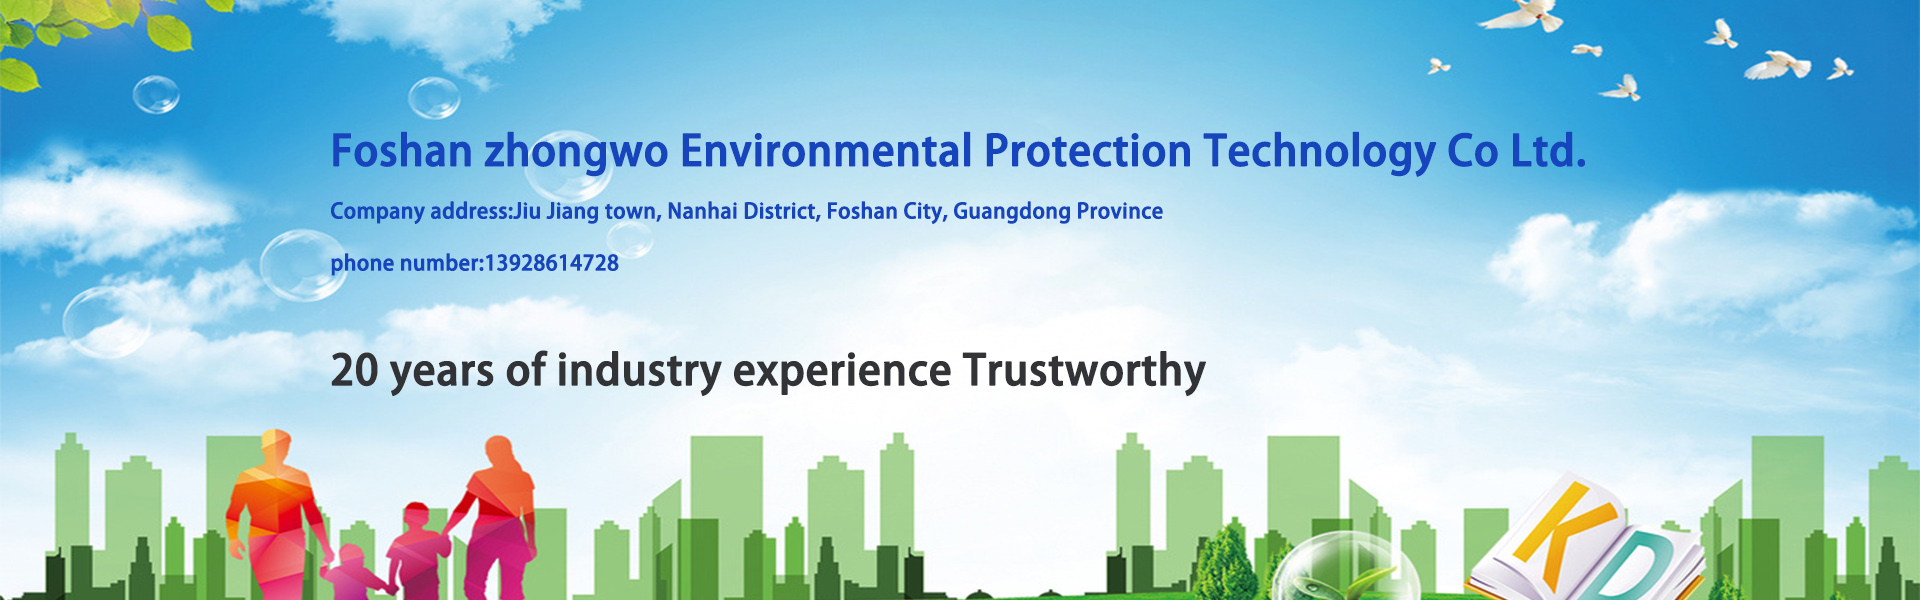 apparecchiature per il trattamento delle acque, attrezzature per la depurazione delle acque, attrezzature per la protezione dell'ambiente,Foshan zhongwo Environmental Protection Technology Co Ltd.